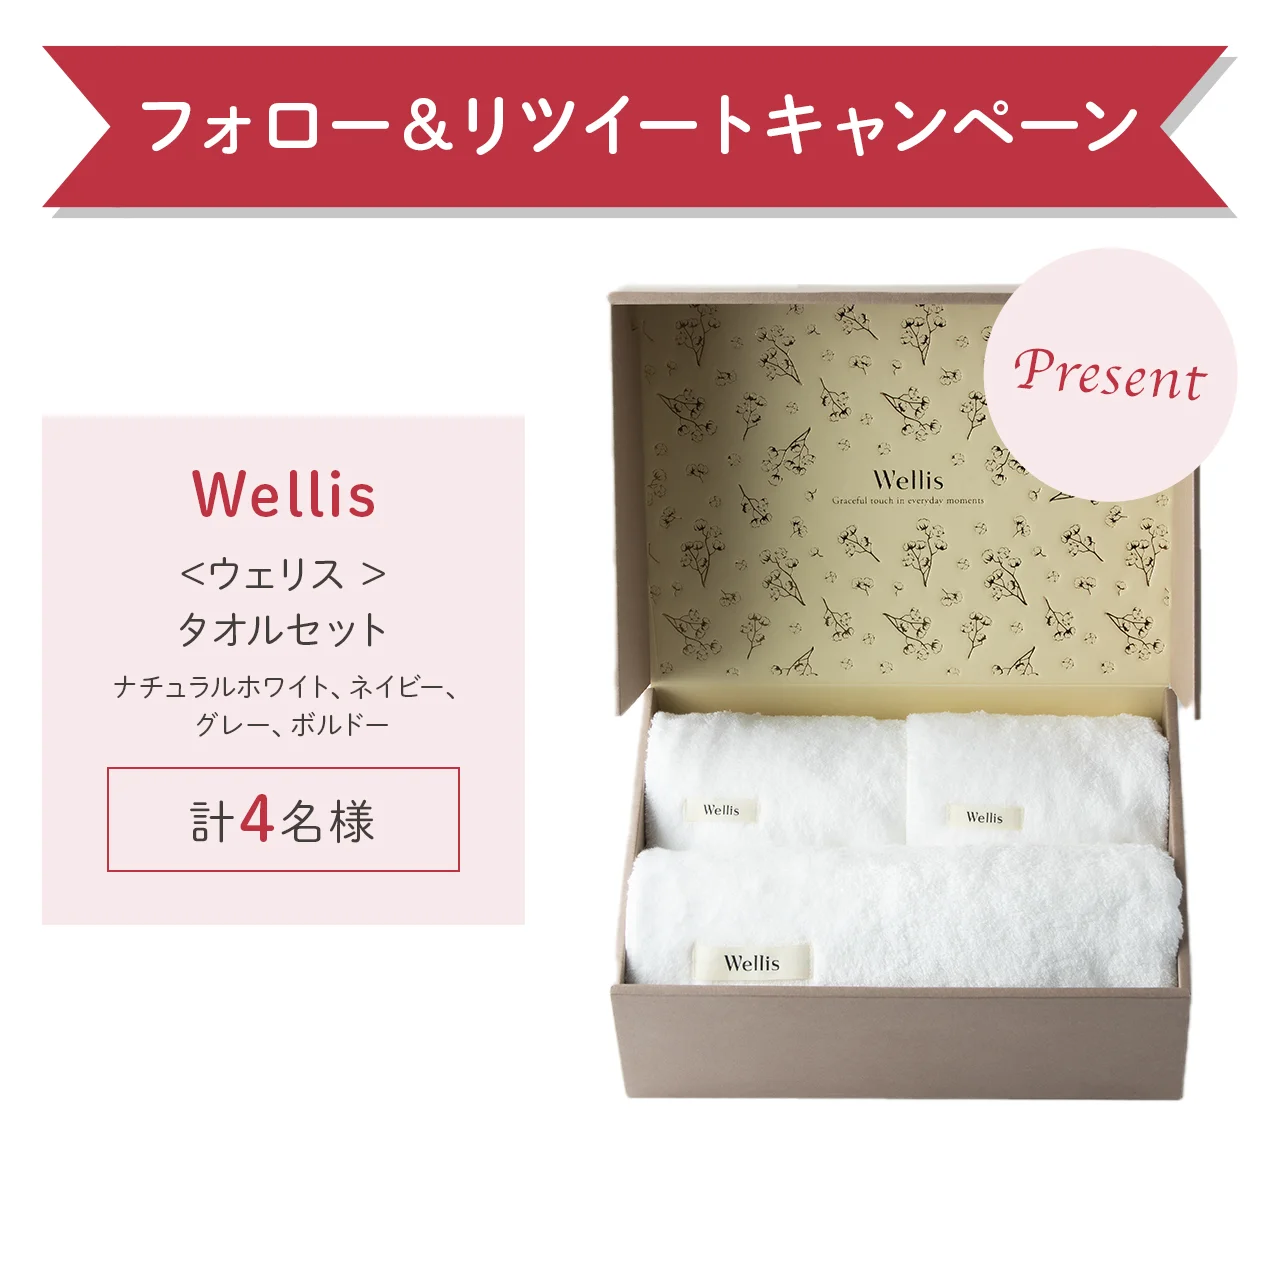 日本最高峰の職人技と織りが“極上の肌心地”を実現した「Wellis」の